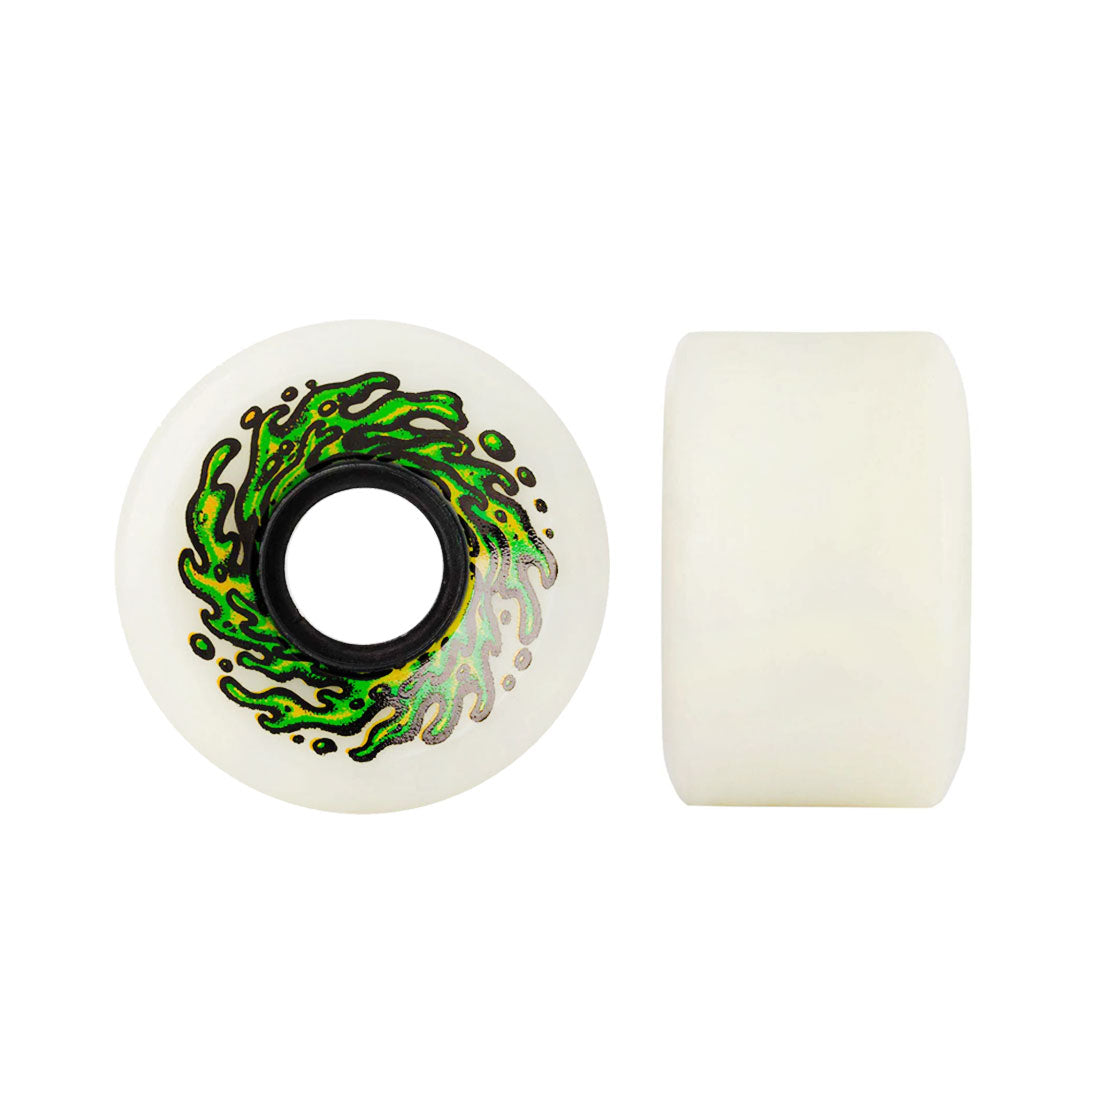 Slime Balls Mini OG Slime 54.5mm 90a - White Skateboard Wheels